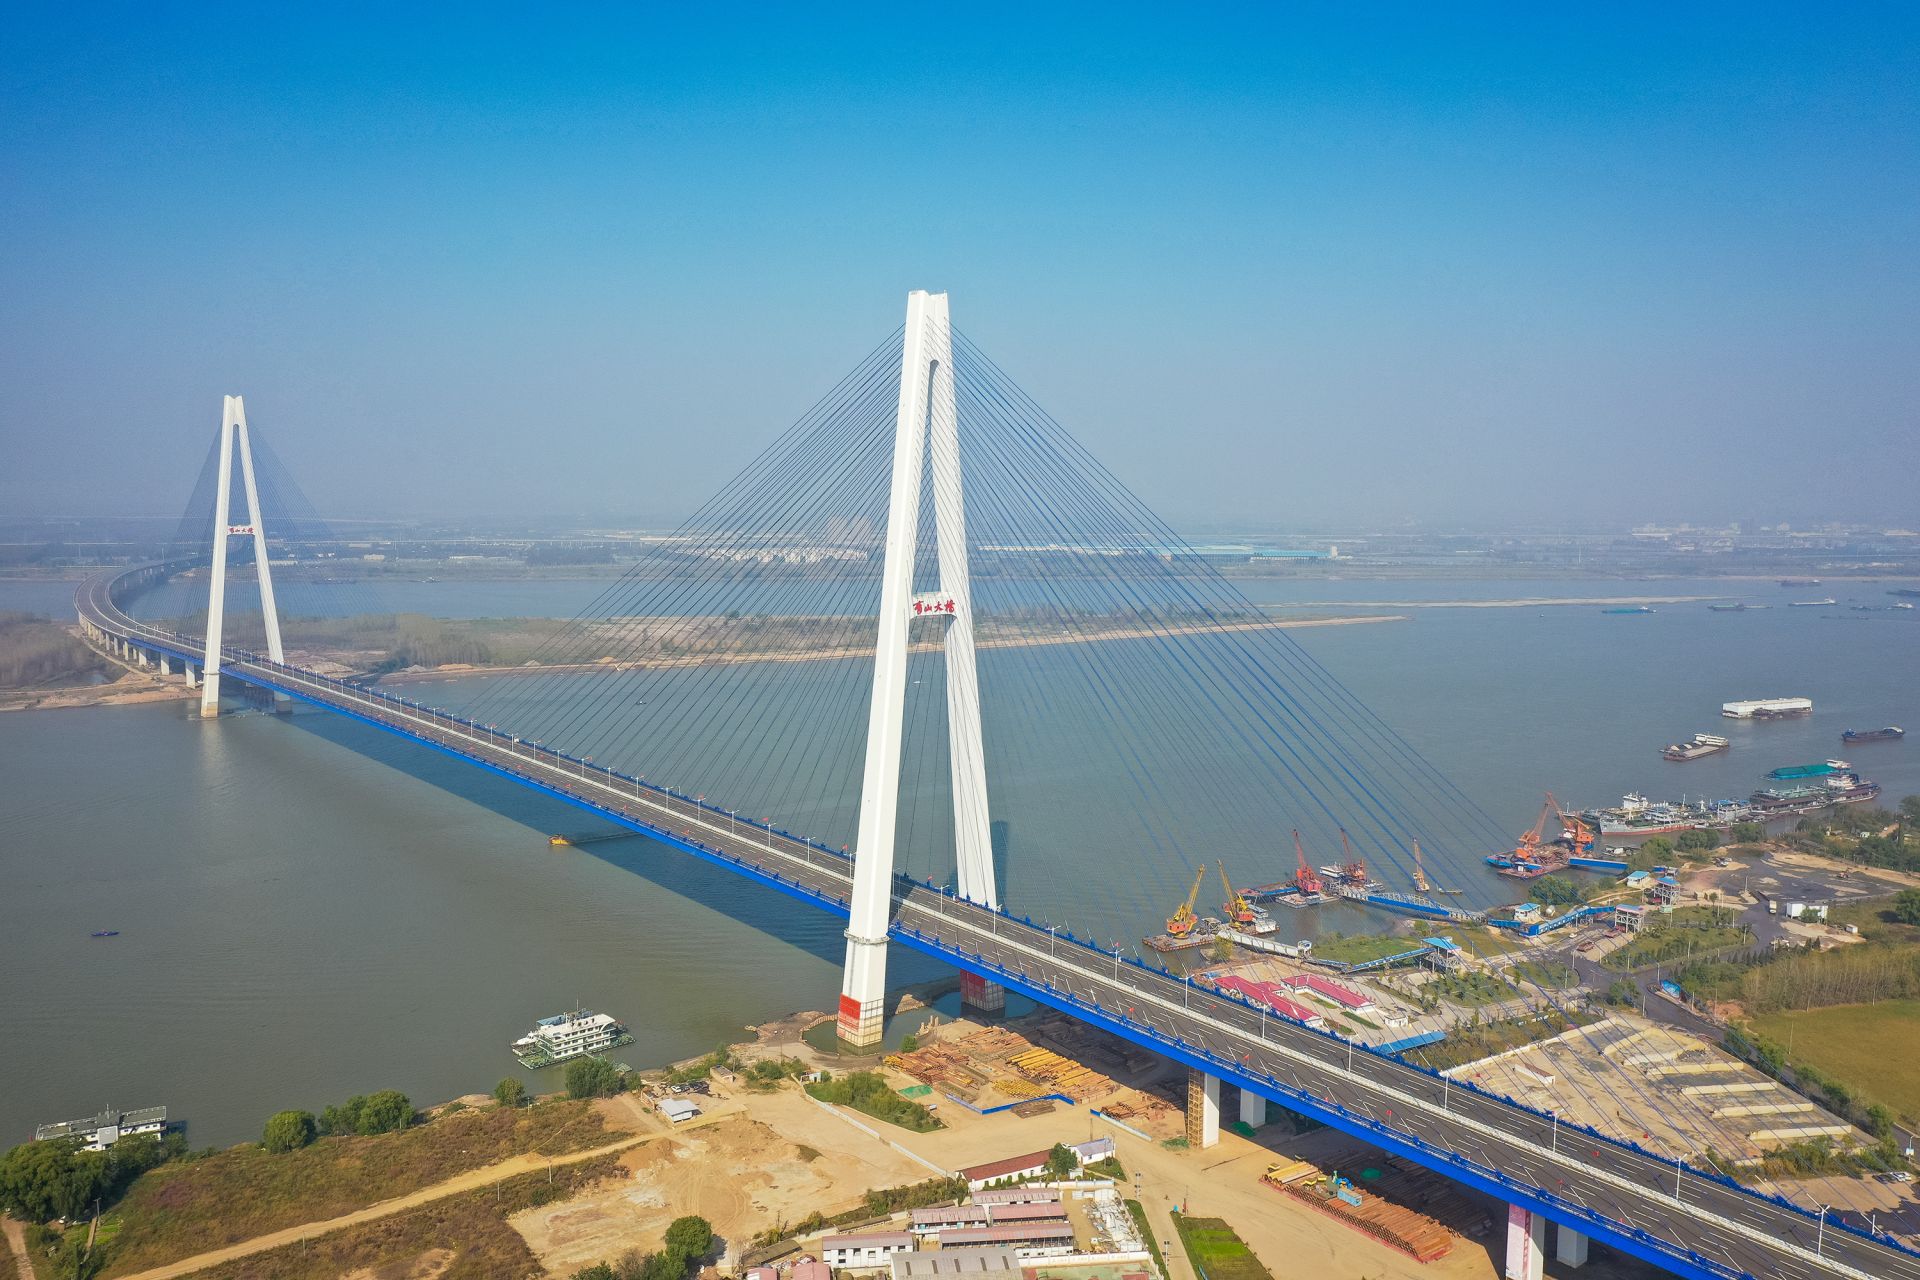 作为其中的控制性工程,武汉第11座长江大桥——由武汉交投集团牵头